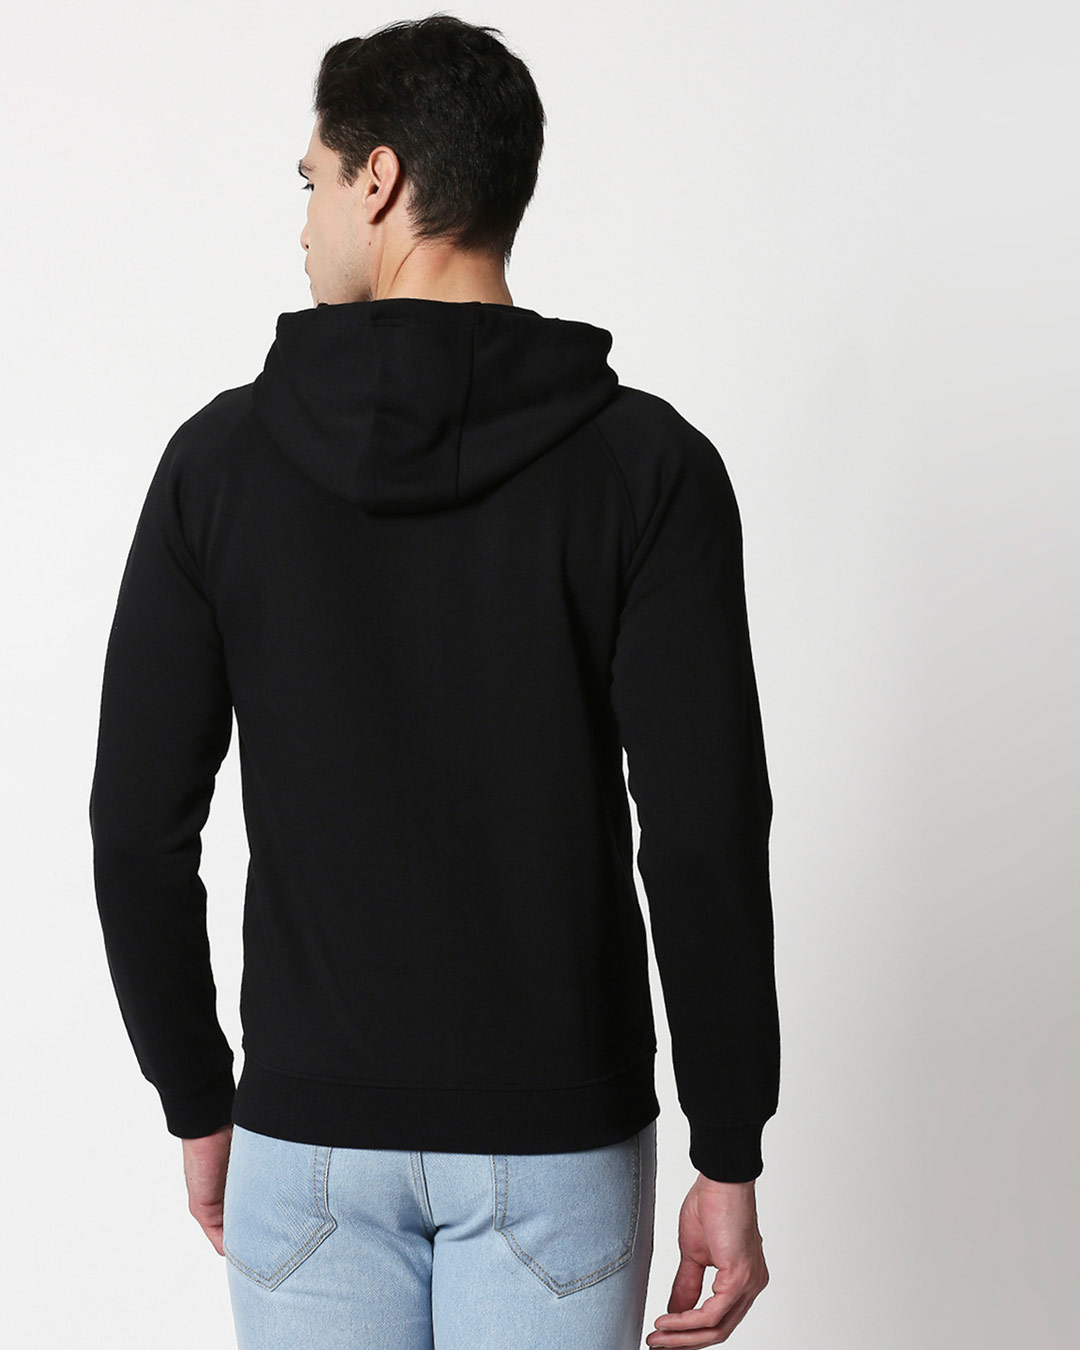 Shop Outdoors ON Hoodie Sweatshirt Black-Back